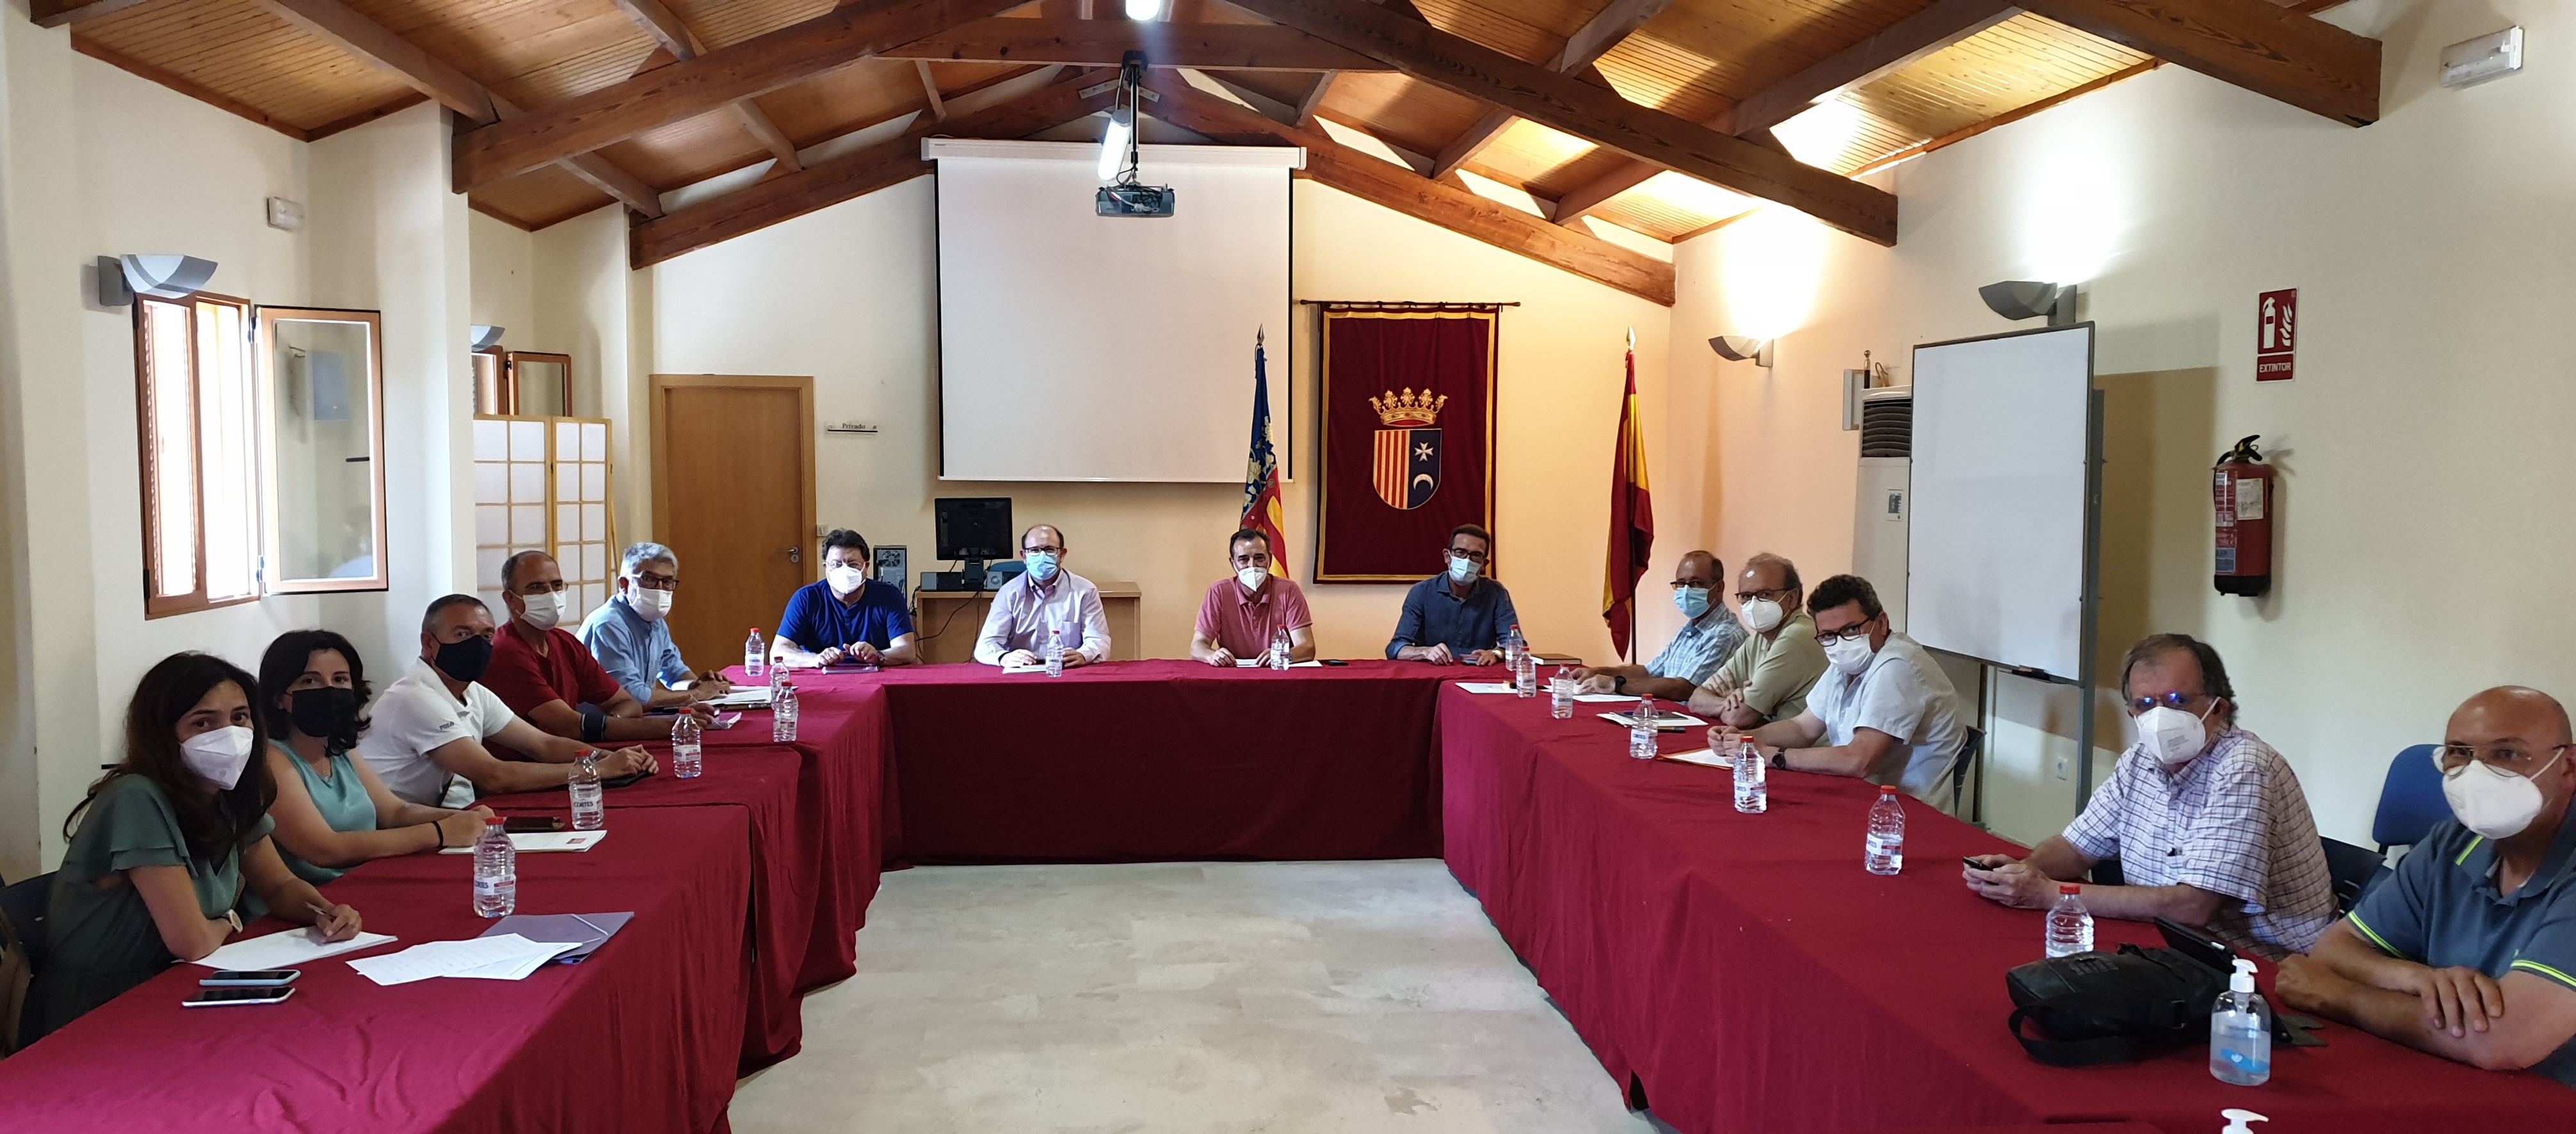 Los municipios del Túria consensuarán una normativa común para regular los usos del Parque Natural